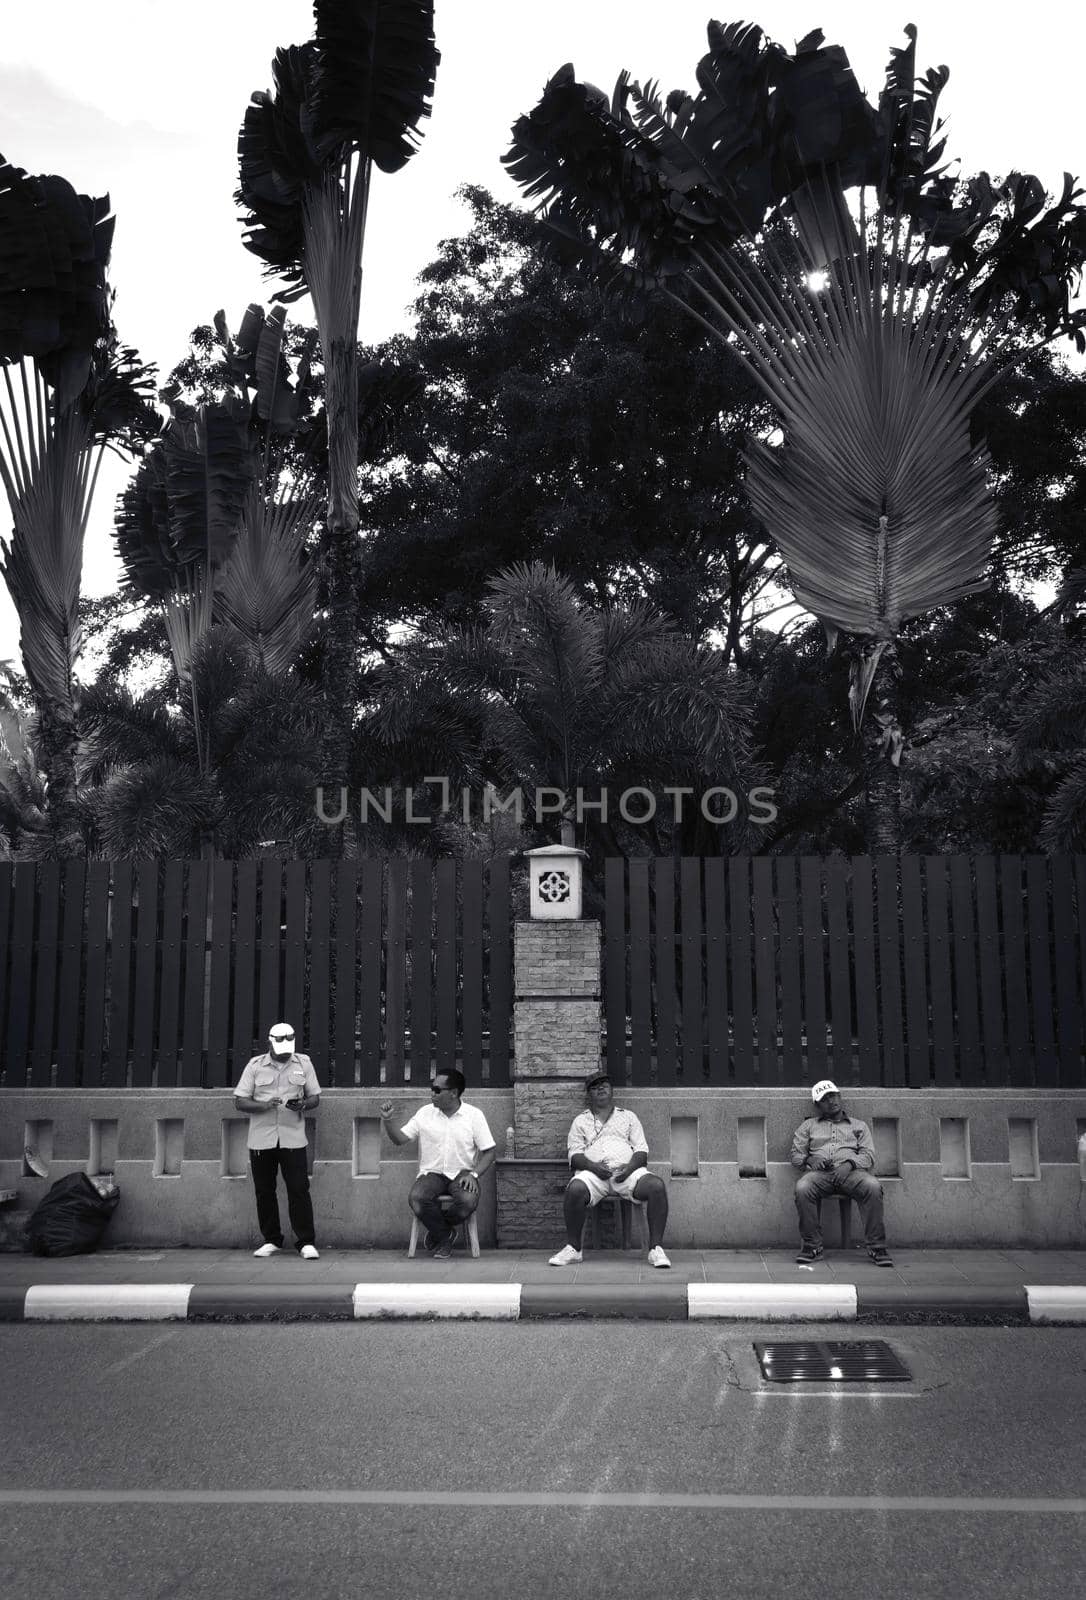 2019-11-05 / Phuket, Thailand - Four sitting men idling on the sidewalk. Black and white. by hernan_hyper